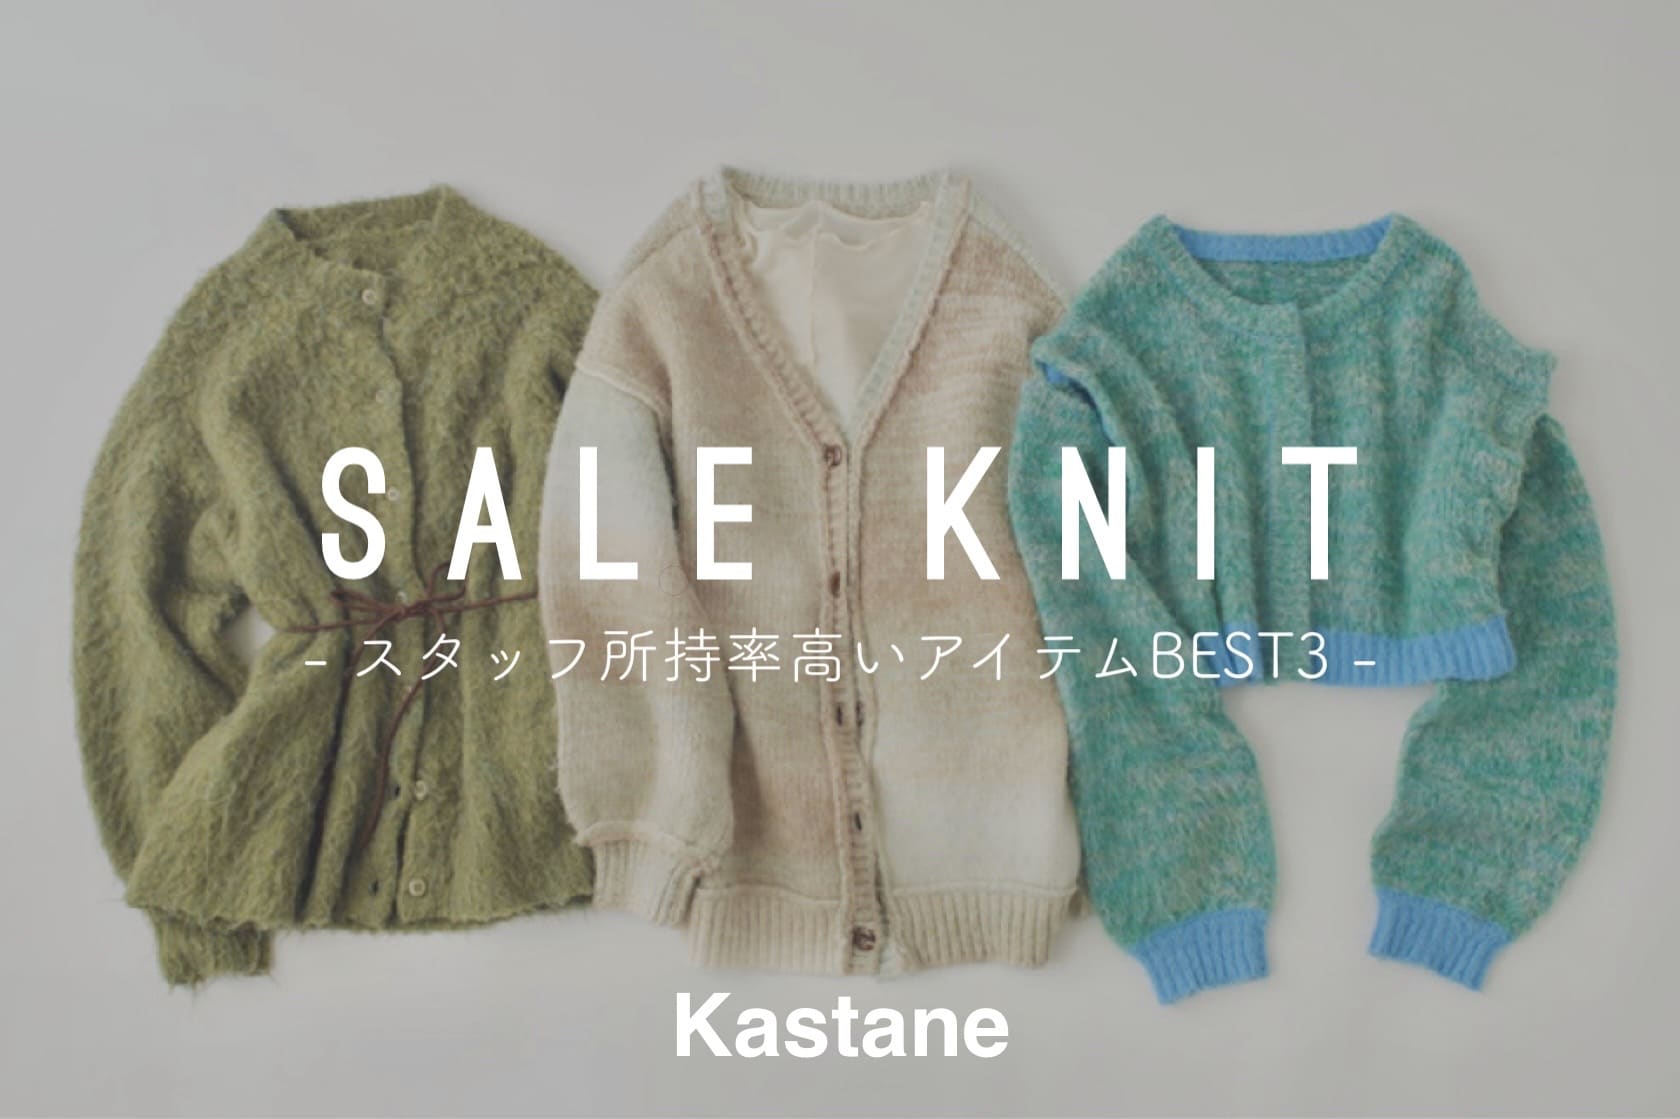 Kastane SALE KNIT - スタッフ所持率の高いアイテムBEST3 -